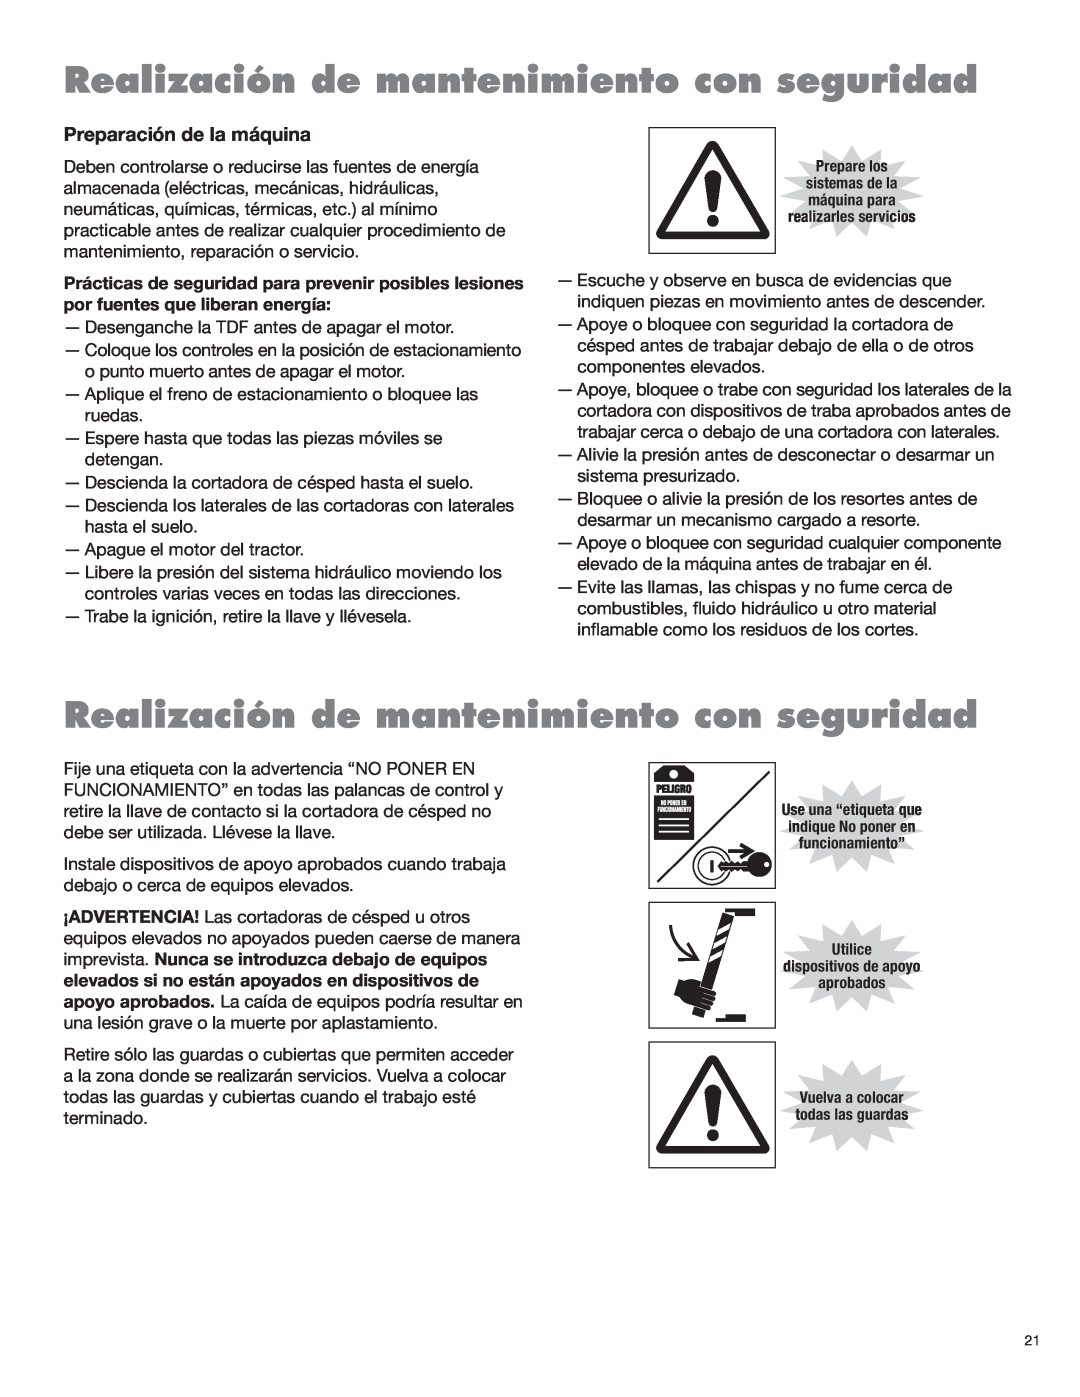 Blue Rhino FC-0025, FC-0024 manual Realización de mantenimiento con seguridad, Preparación de la máquina 